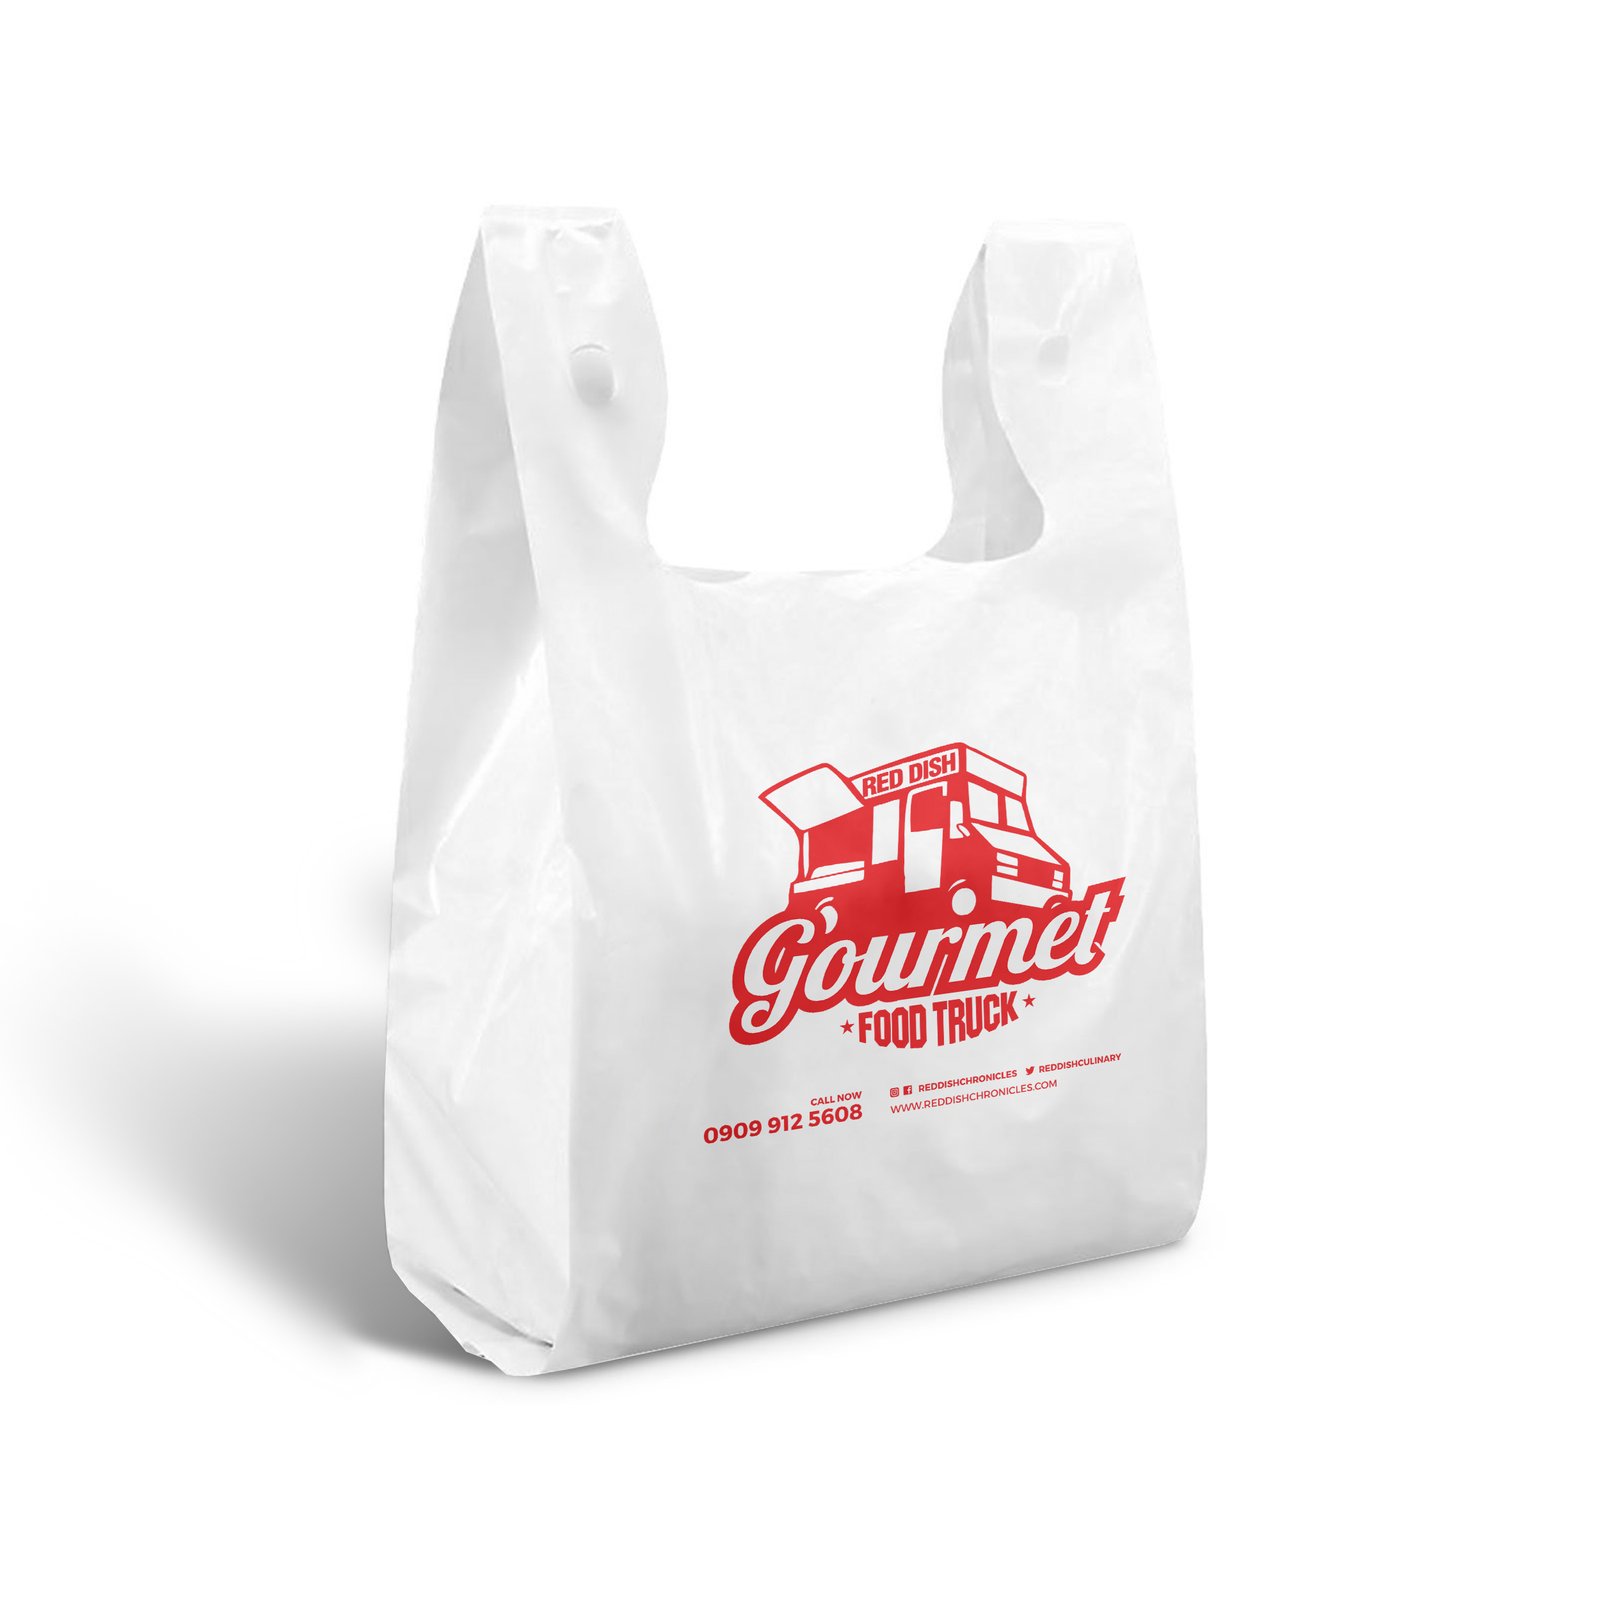 T-shirt plastic bag nylon bags – Dowins